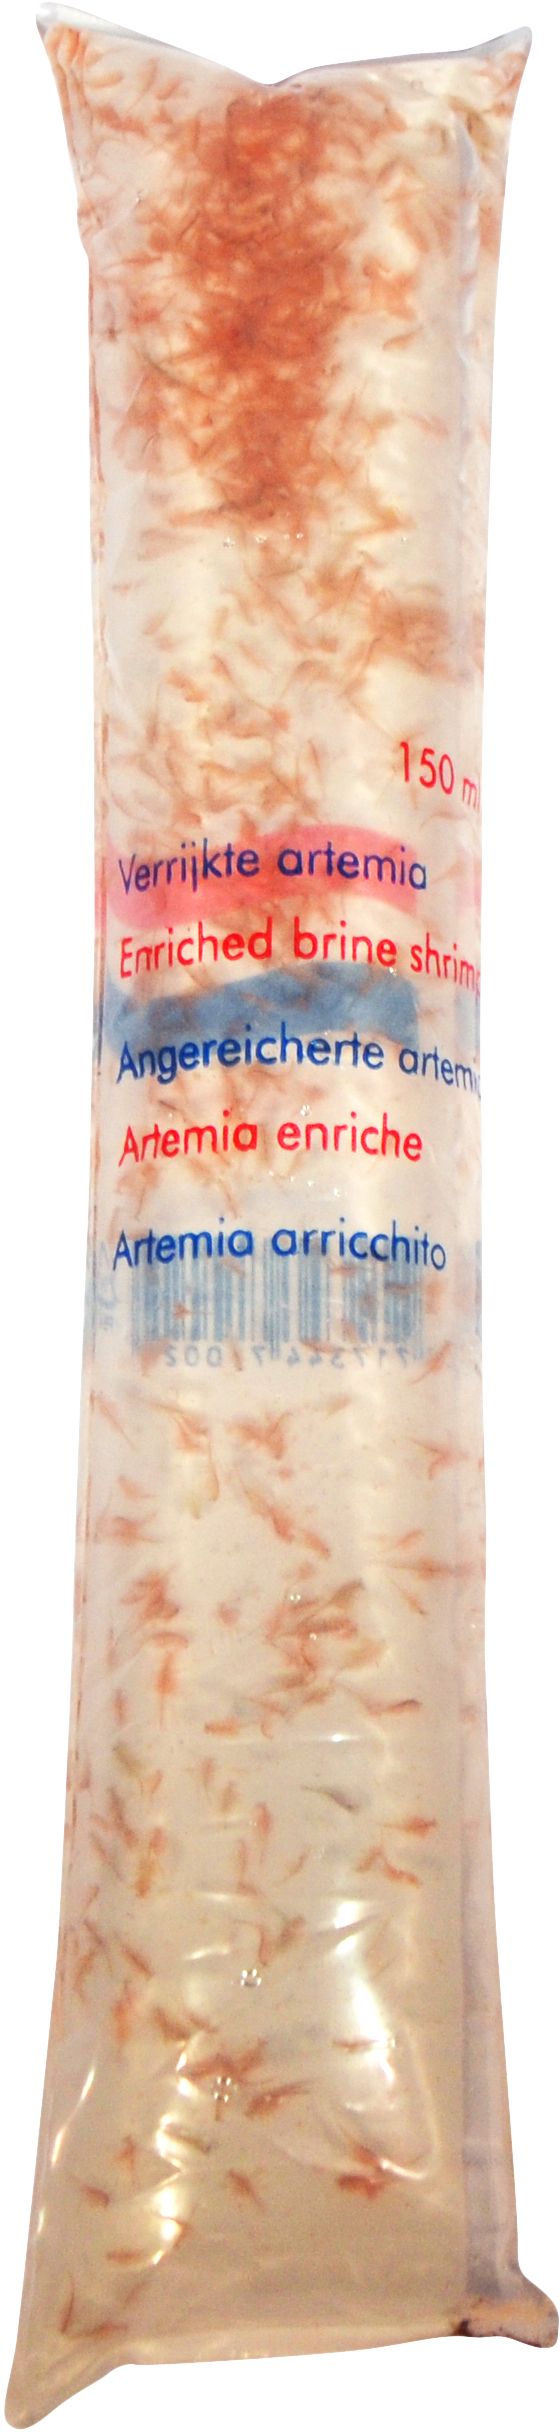 AQUADIP Artemia “Brine shrimp”